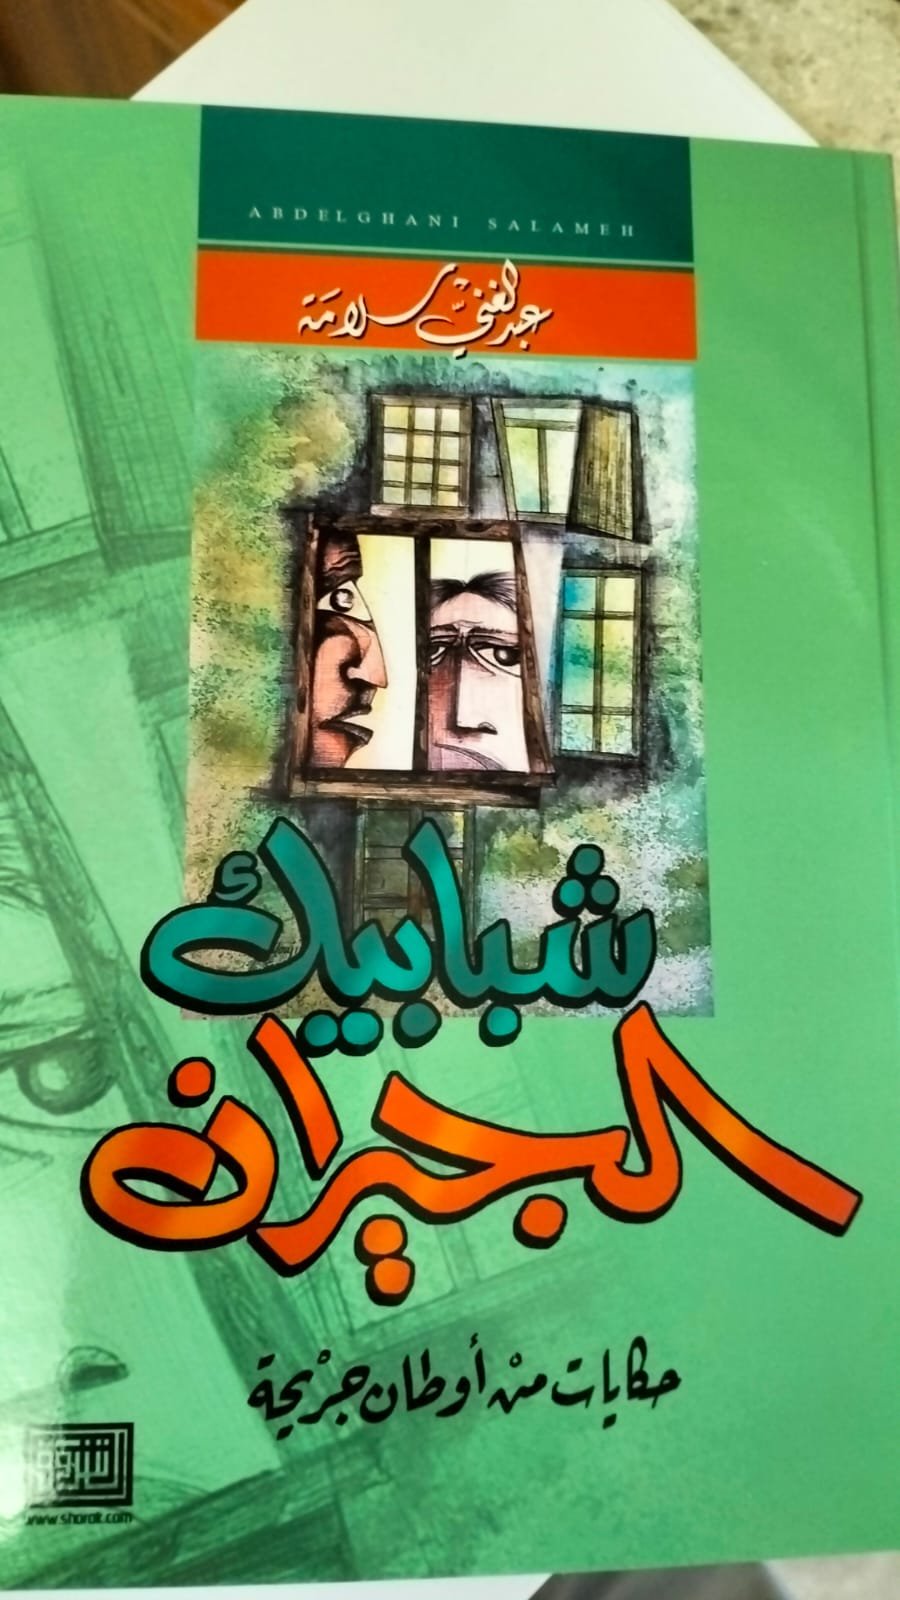 رام الله: إطلاق كتاب "شبابيك الجيران " للكاتب عبد الغني سلامة-2